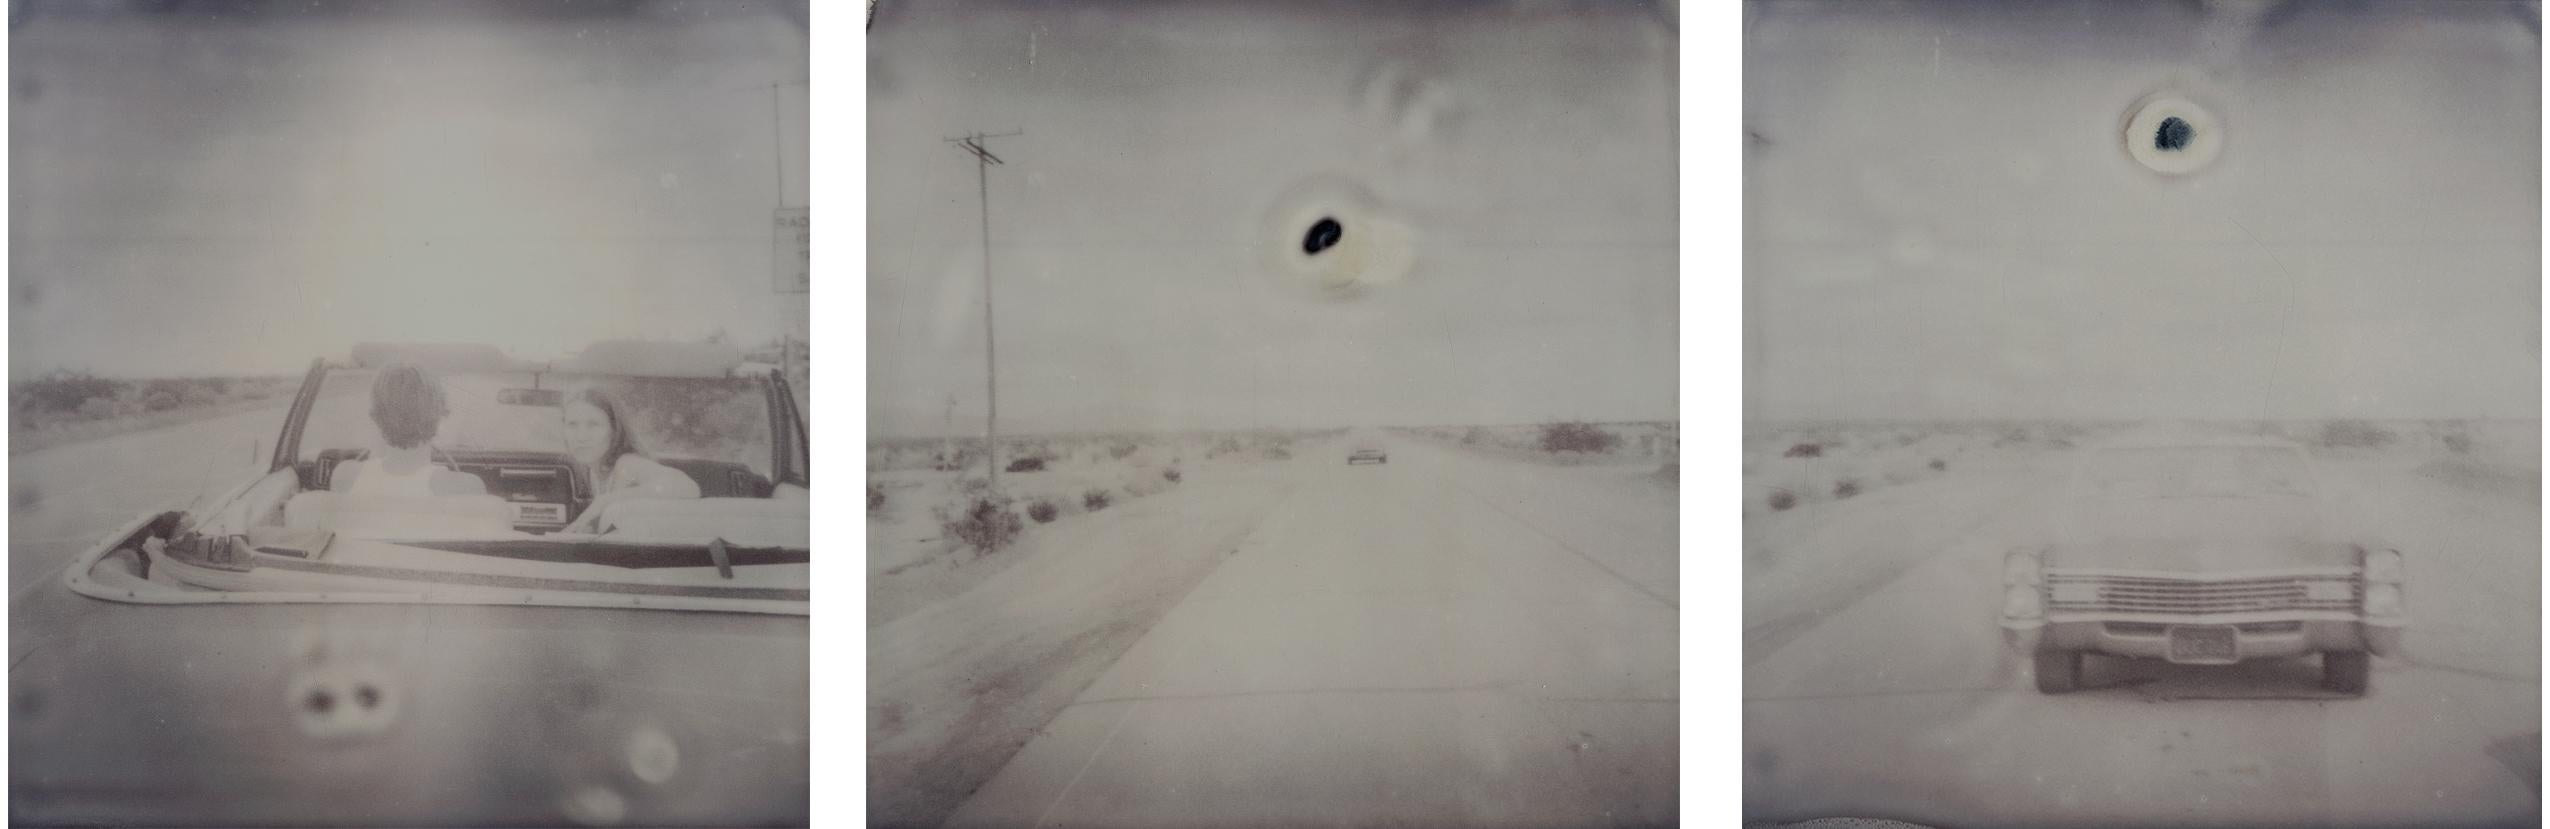 Stefanie Schneider Landscape Photograph - Leaving - Sidewinder, analog, triptych